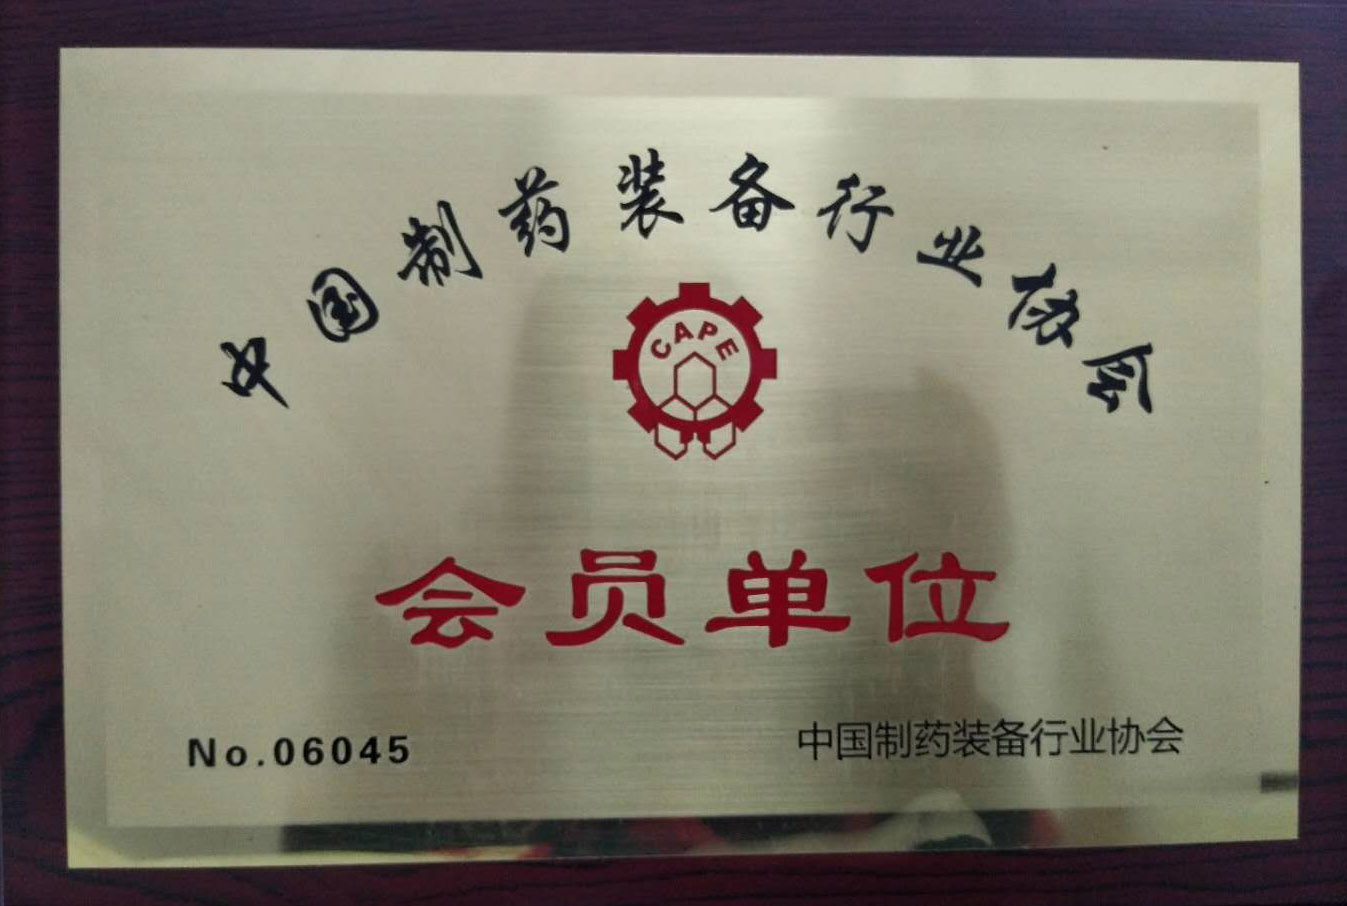 中国制药装备行业协会会员单位